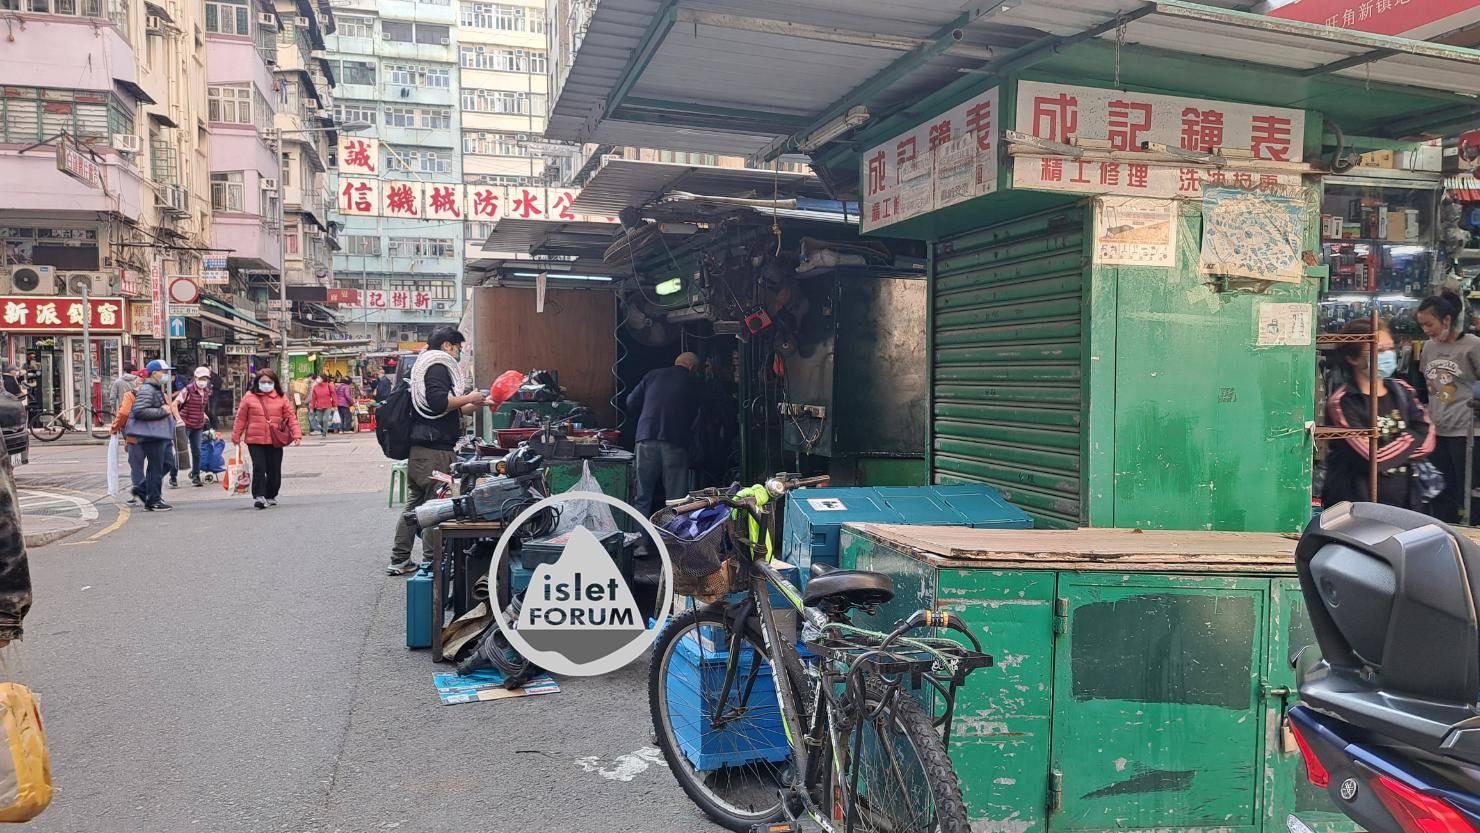 上海街廣東道之間的快富街小販檔 Fife Street Hawker Stall (7).jpg